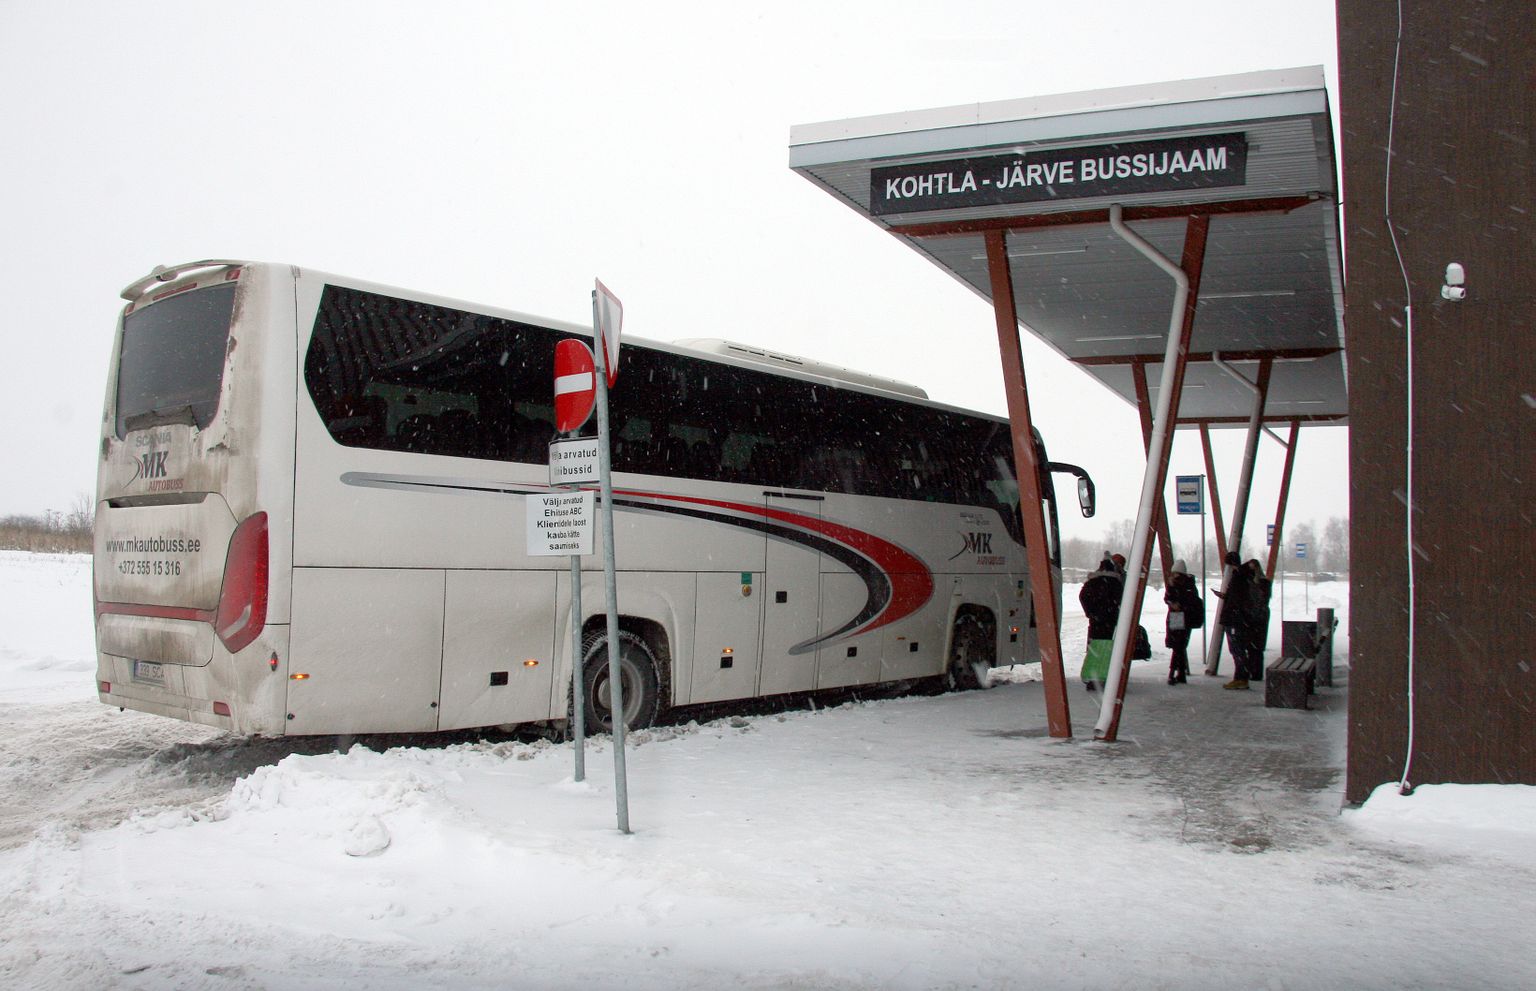 В этом году на автостанцию, расположенную на территории "Виронии", заезжает значительно меньше междугородных автобусов.